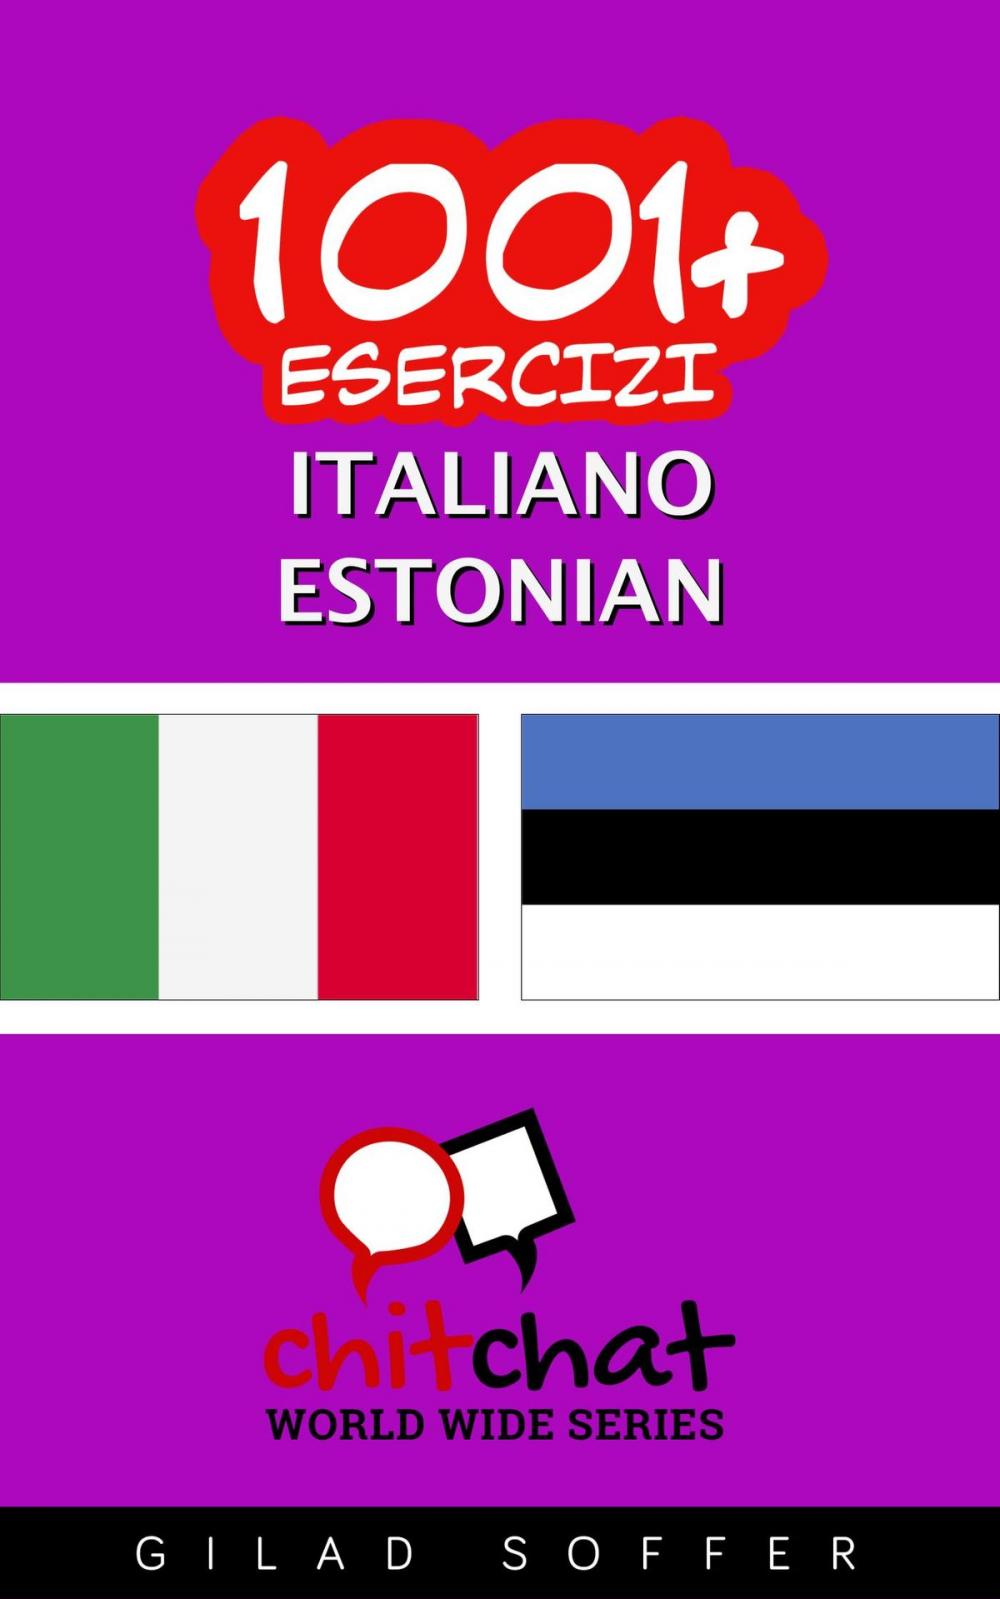 Big bigCover of 1001+ Esercizi Italiano - Estone